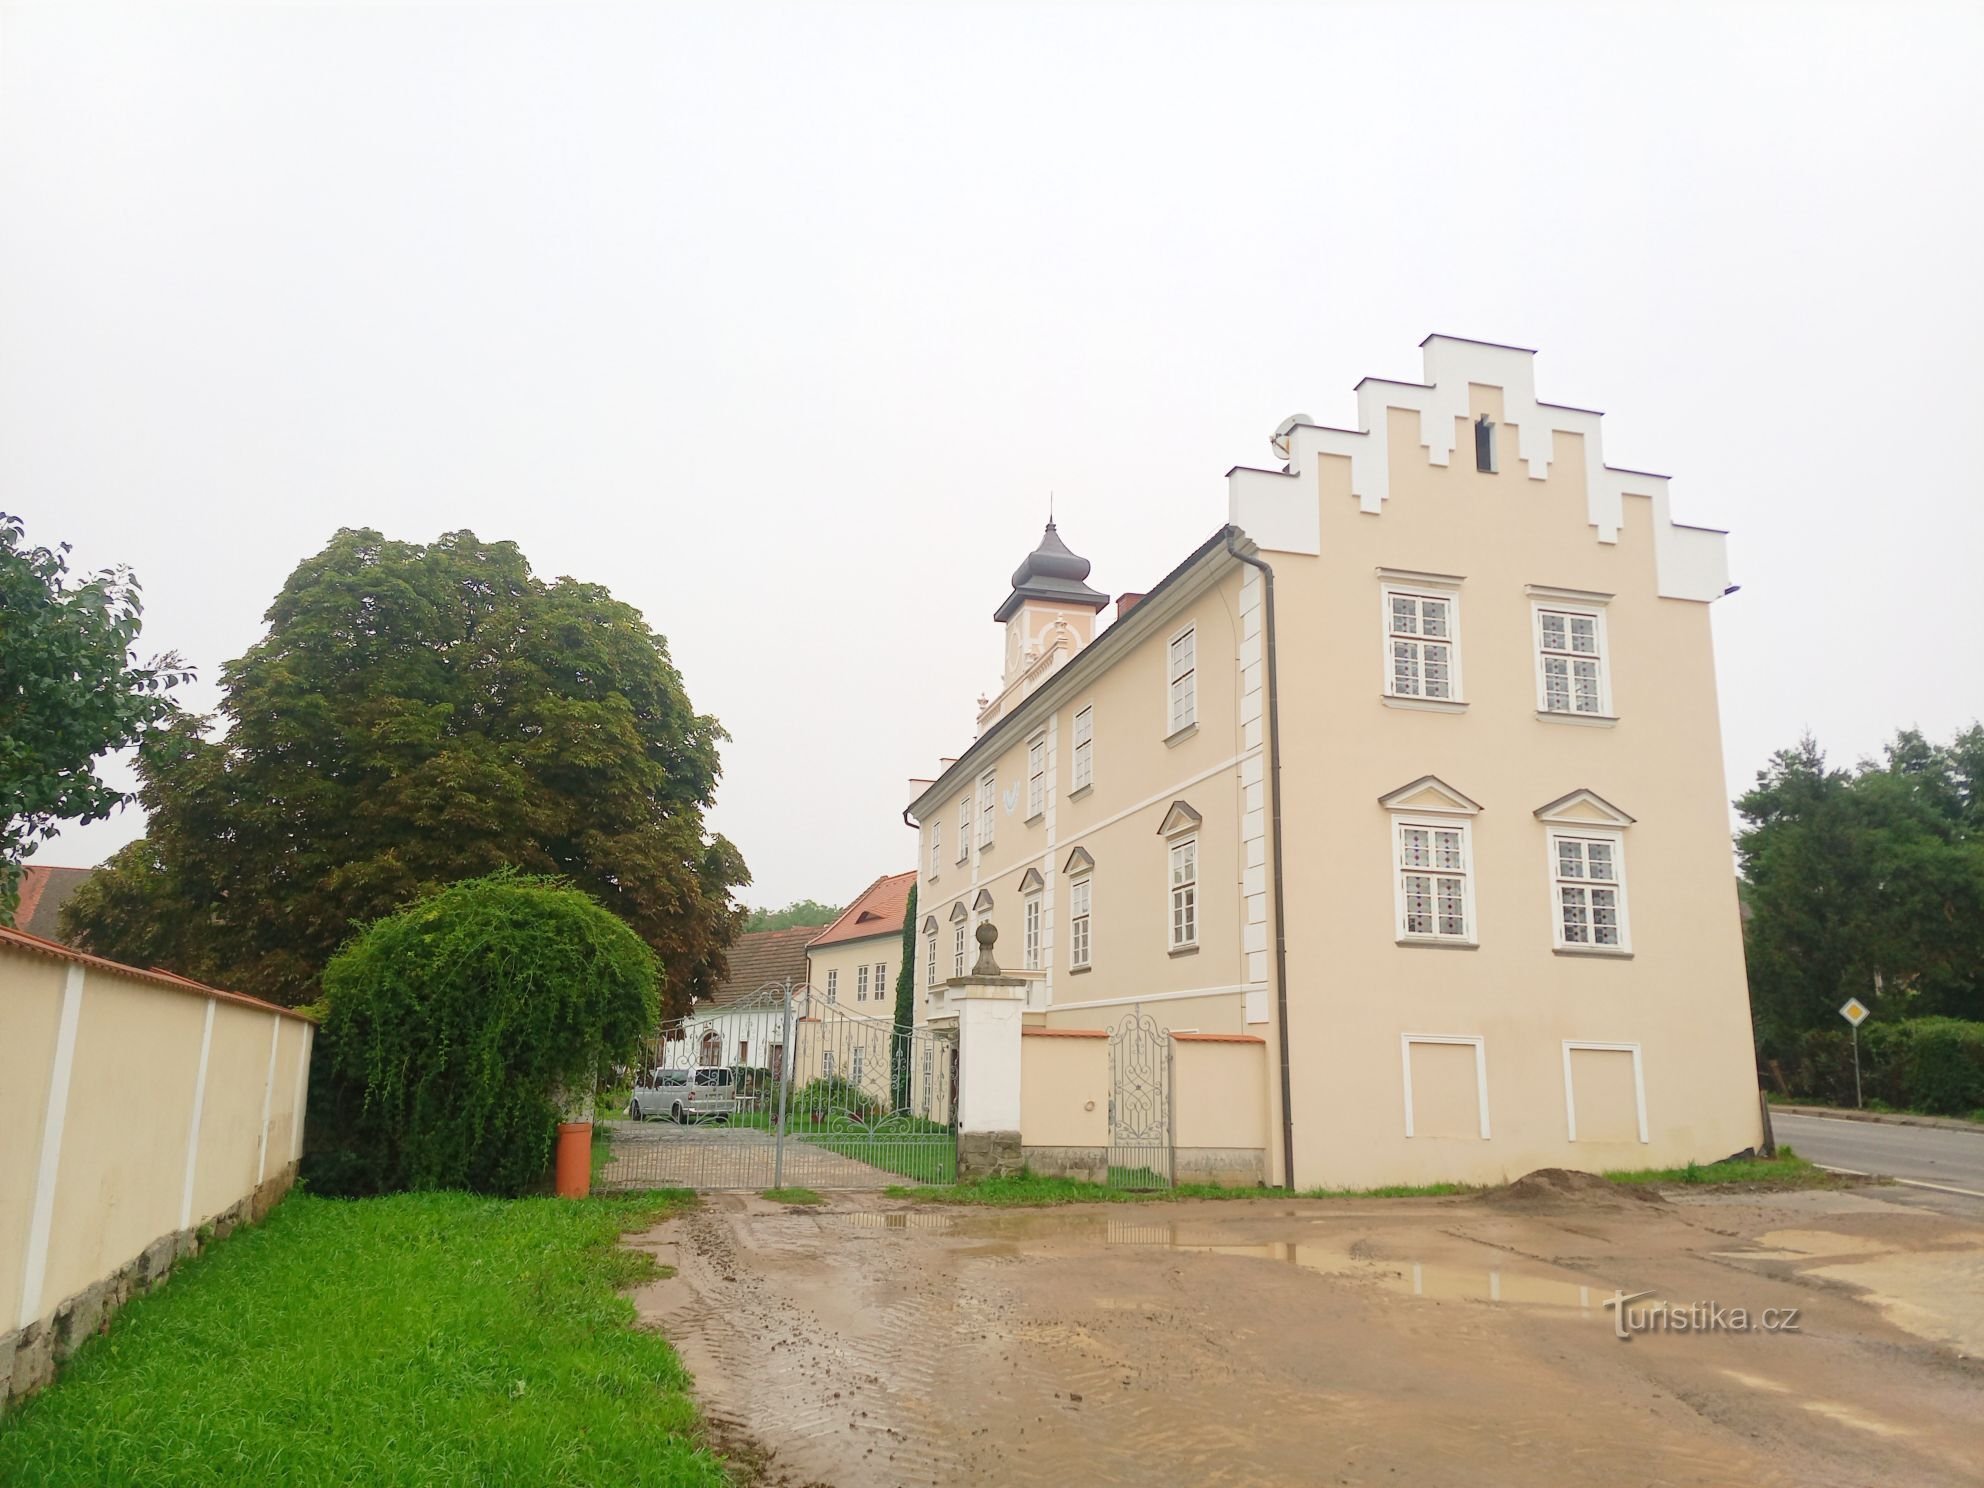 1. 17 世纪初位于 Kňovice 的文艺复兴时期的城堡。 带tr的长方形二层建筑